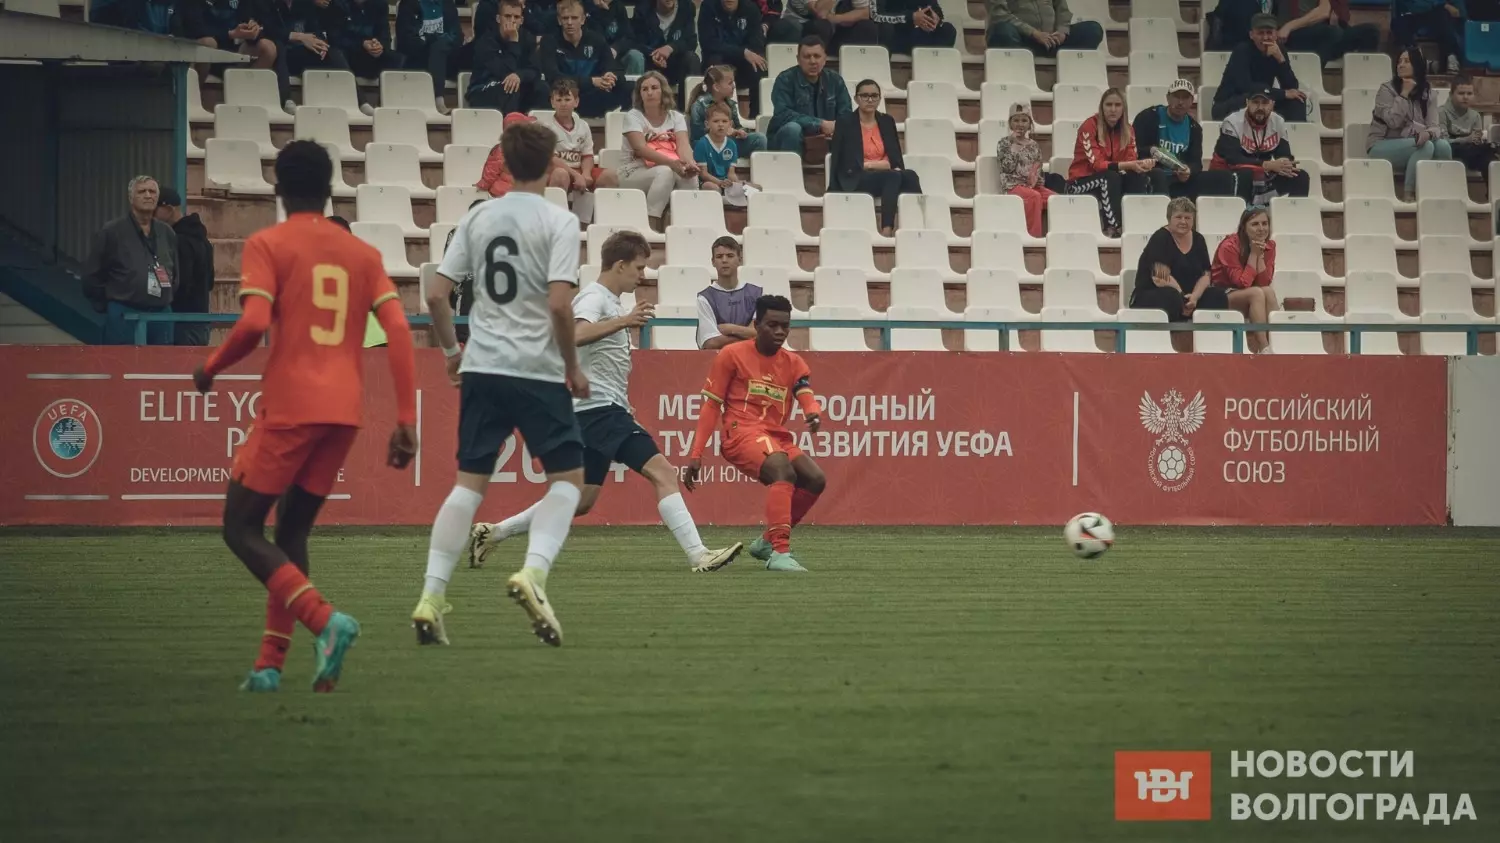 Сборная России выиграла в первом же матче на турнире развития УЕФА